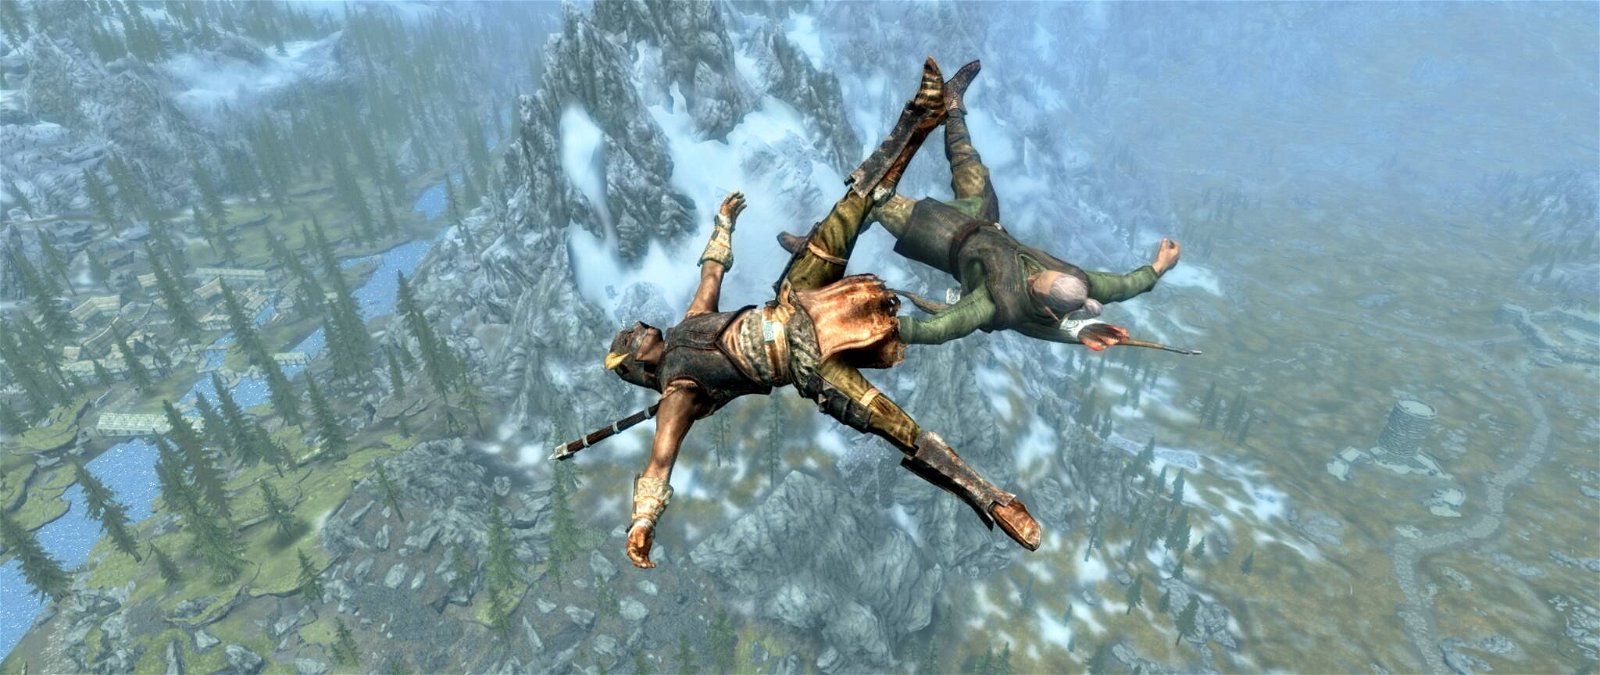 Immagine di Skyrim Chaos Edition: la mod che renderà le vostre partite imprevedibili